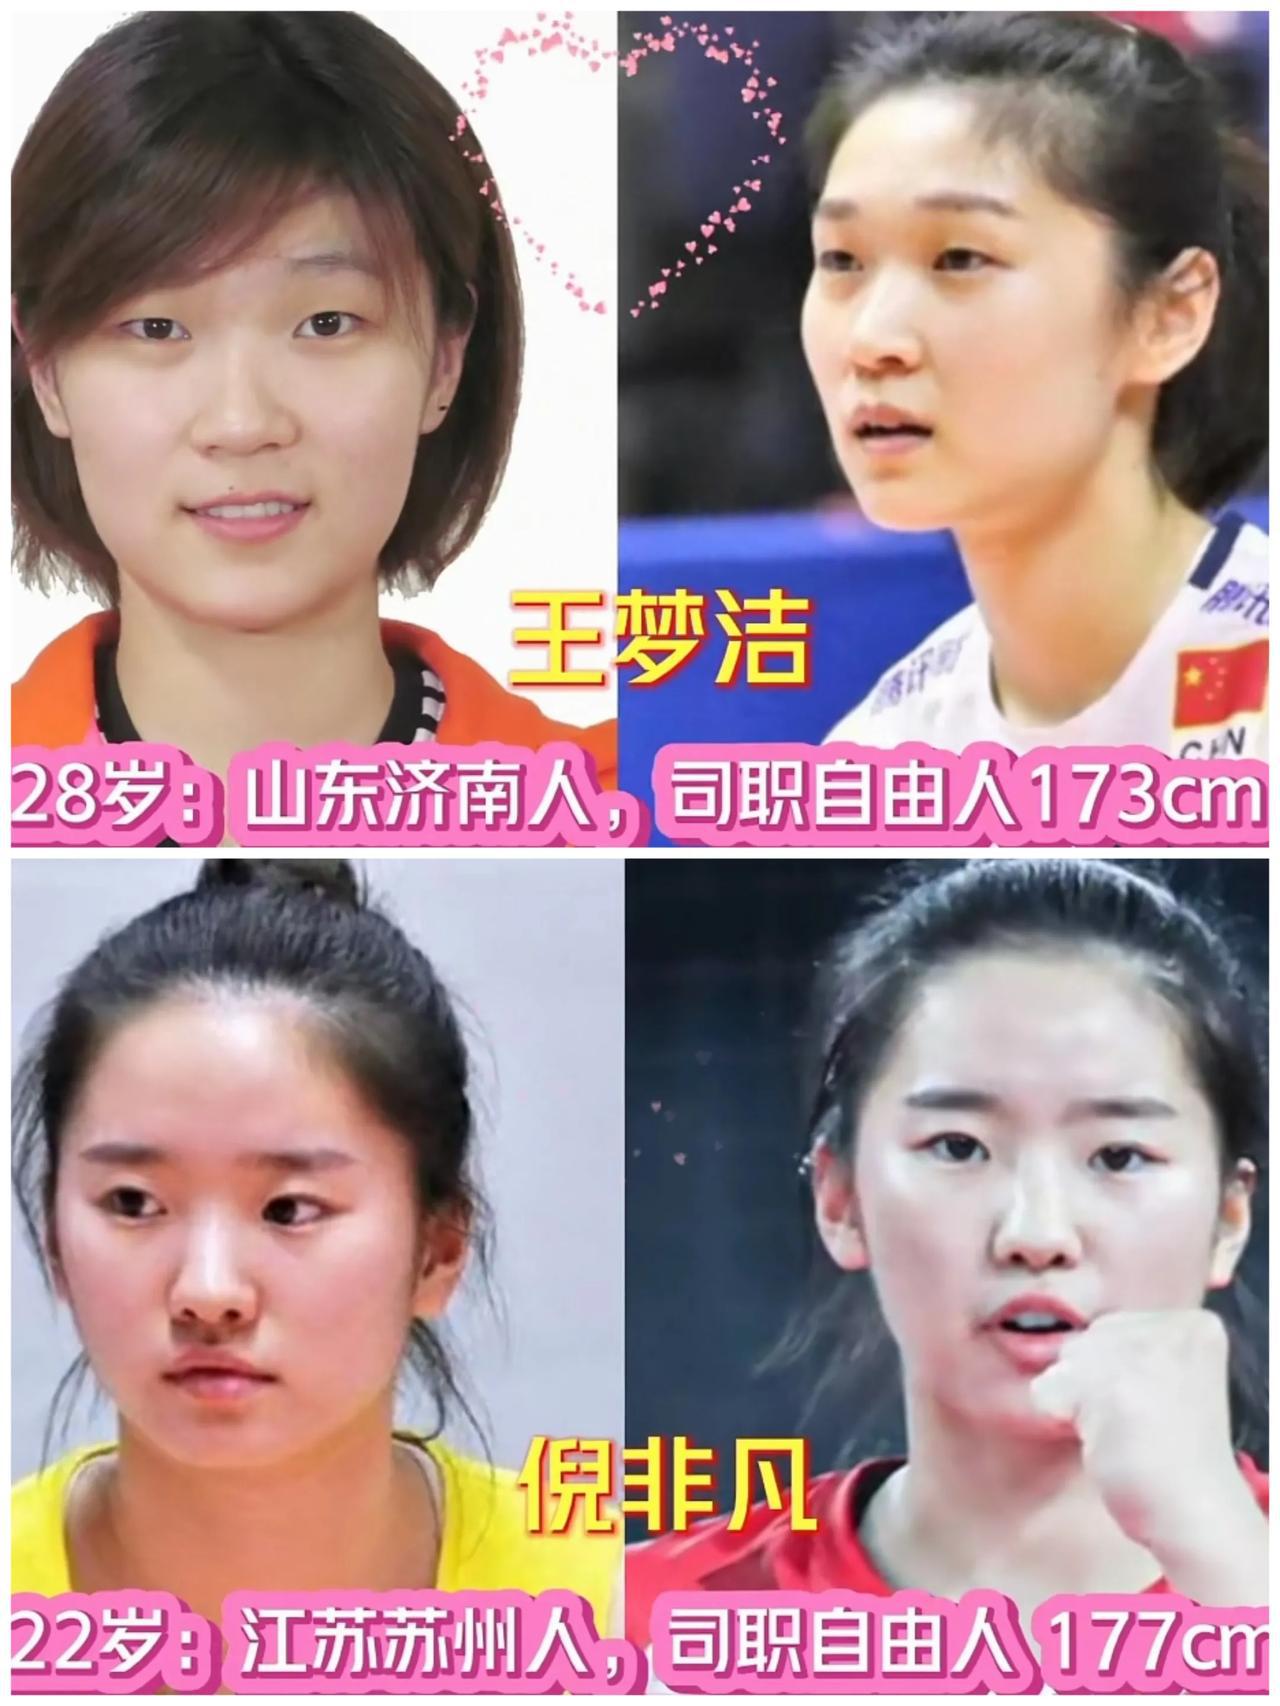 23年“中国女排”24名运动员，朱婷缺席袁心玥领衔!你最喜欢哪位呢

对于今年的(17)